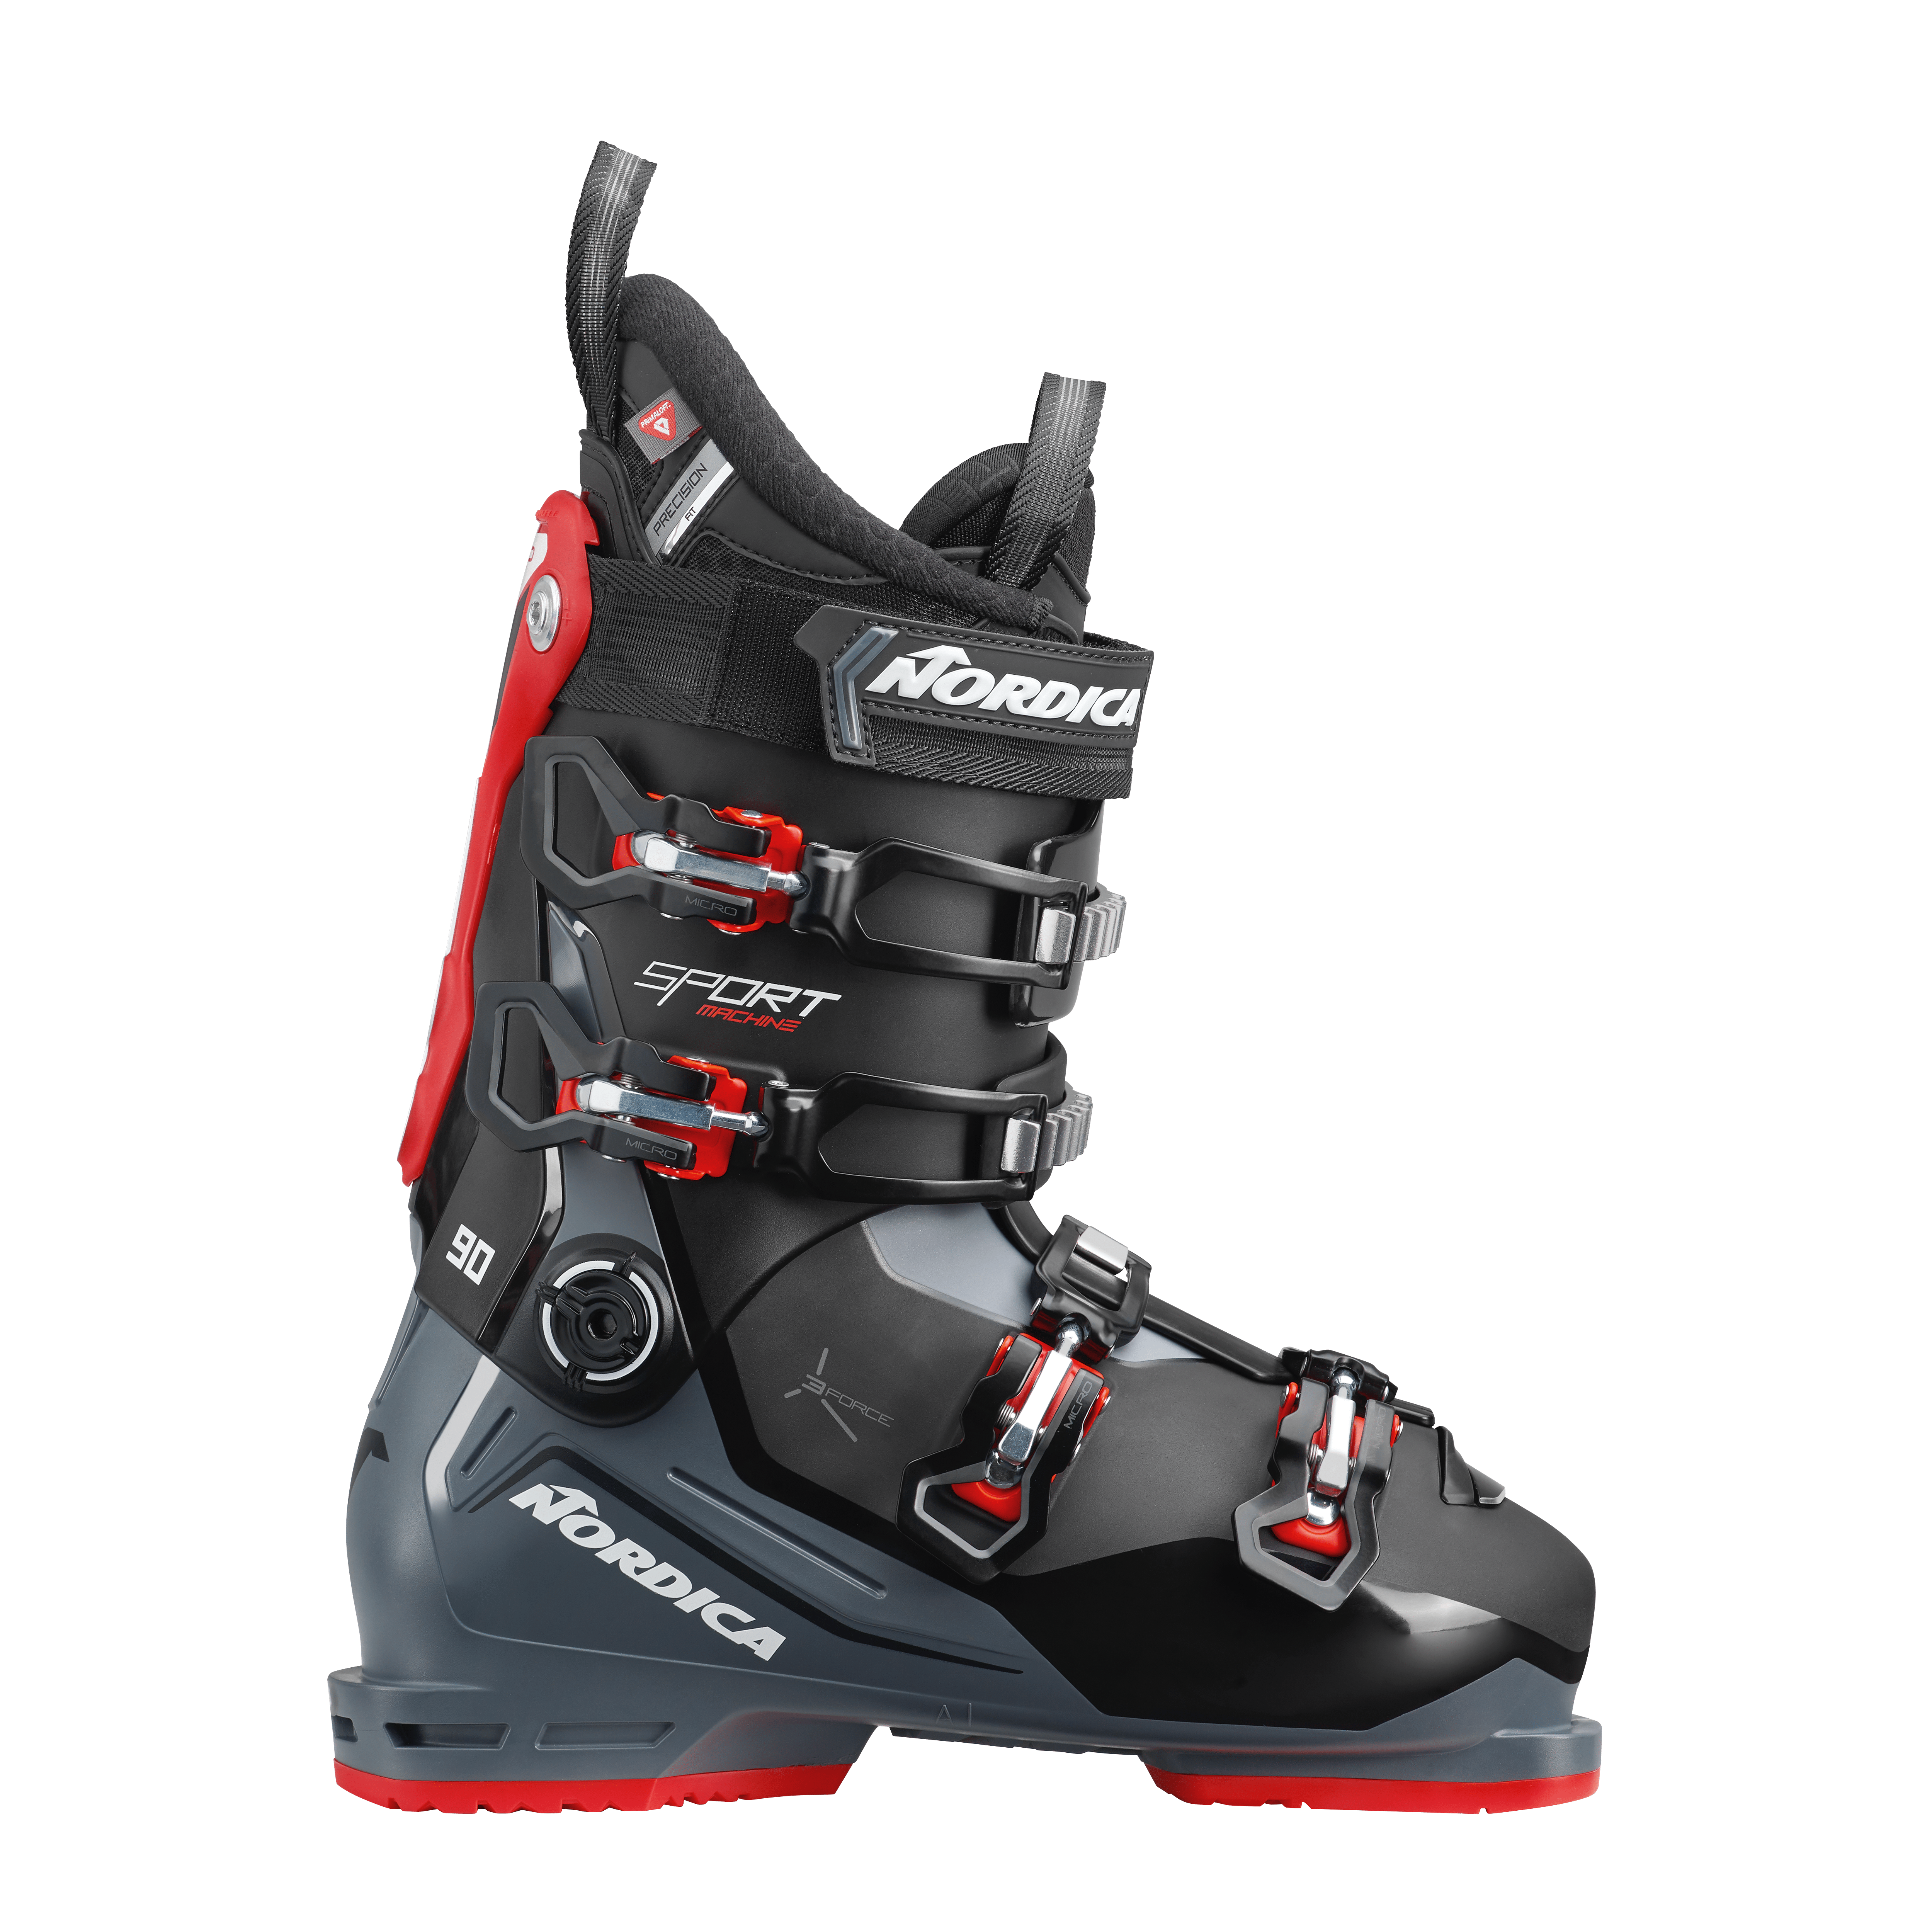 Nordica sportmachine 90 x señores fijaciones botas de esquí 